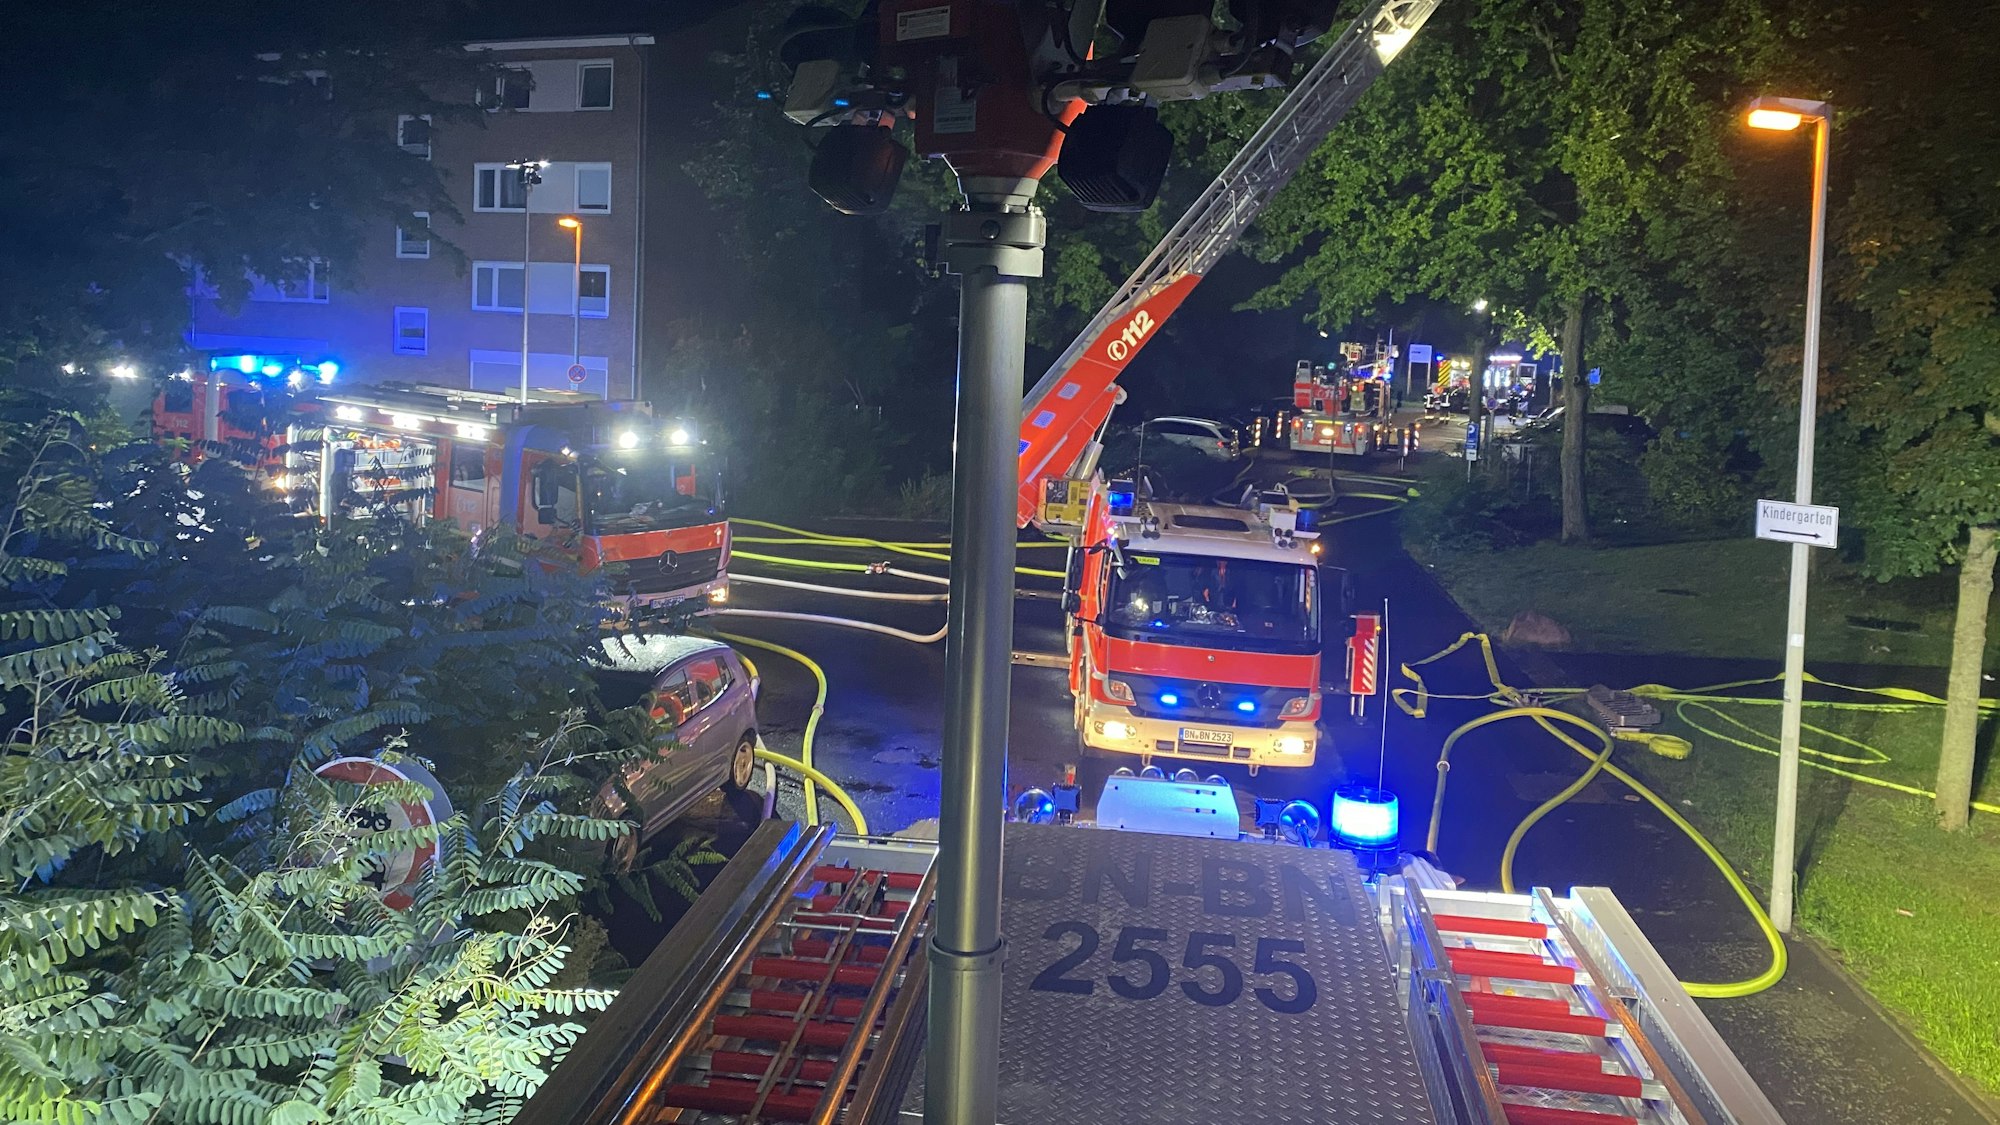 Feuerwehr und Rettungsdienst Bonn bei dem Einsatz in Bonn-Tannenbusch in der Nacht zum Sonntag (22. August).